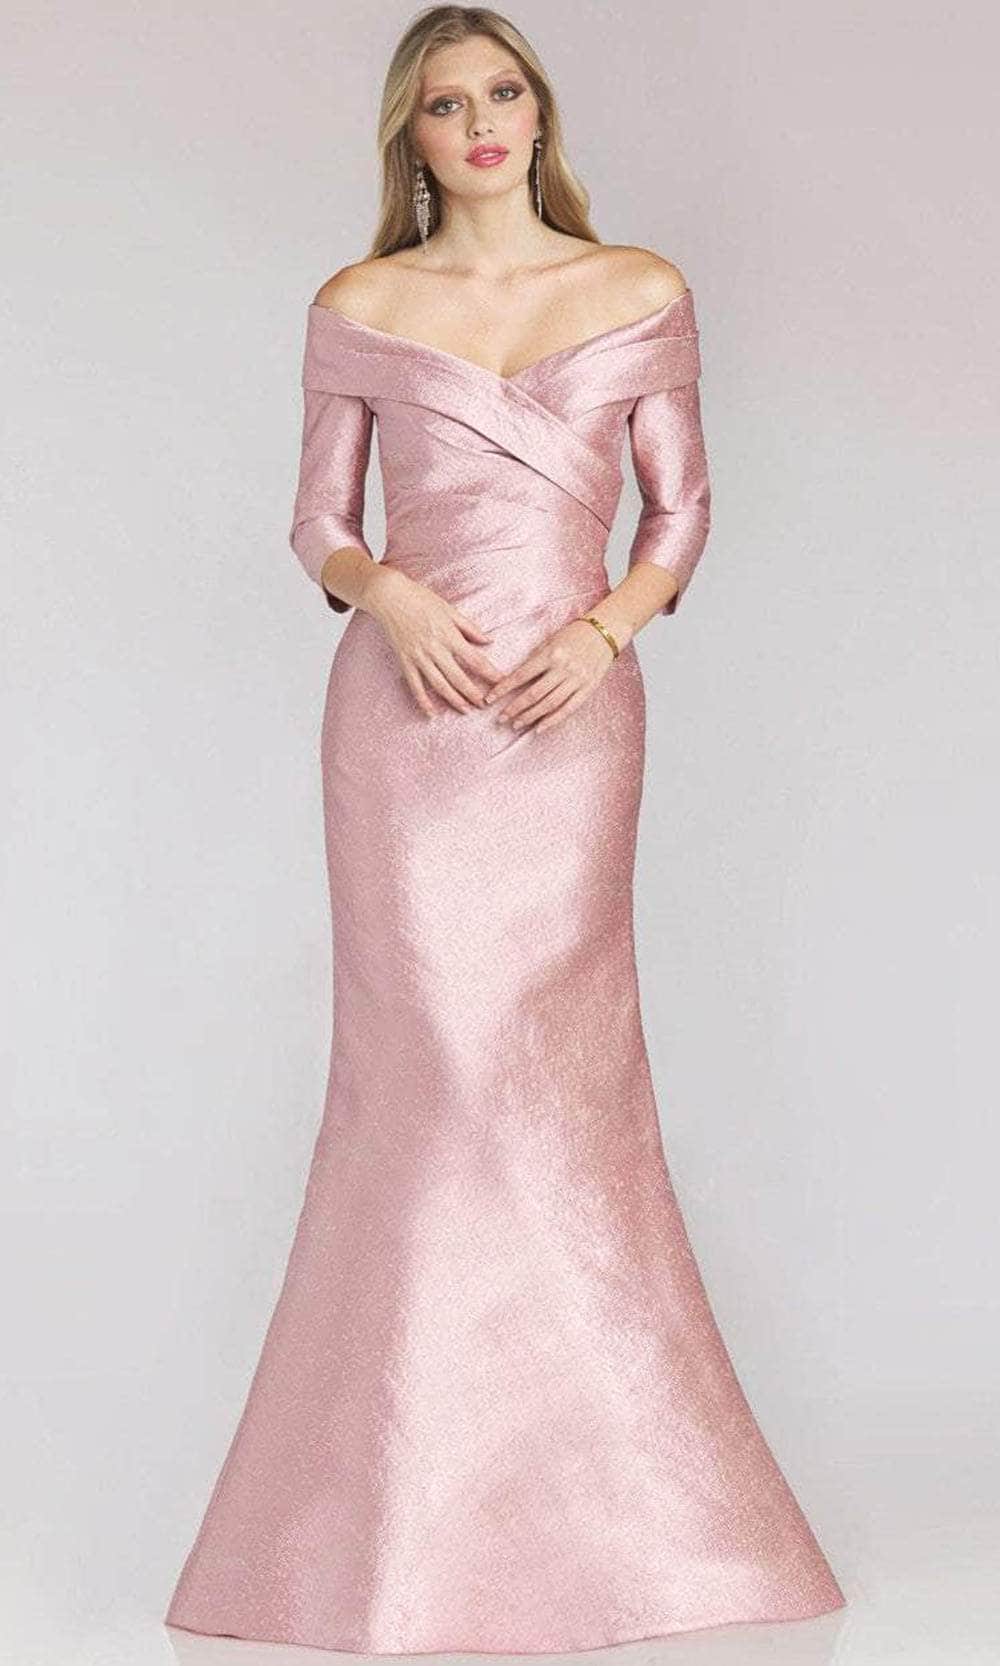 Gia Franco 12222 - Sleek Off Shoulder Evening Dress
